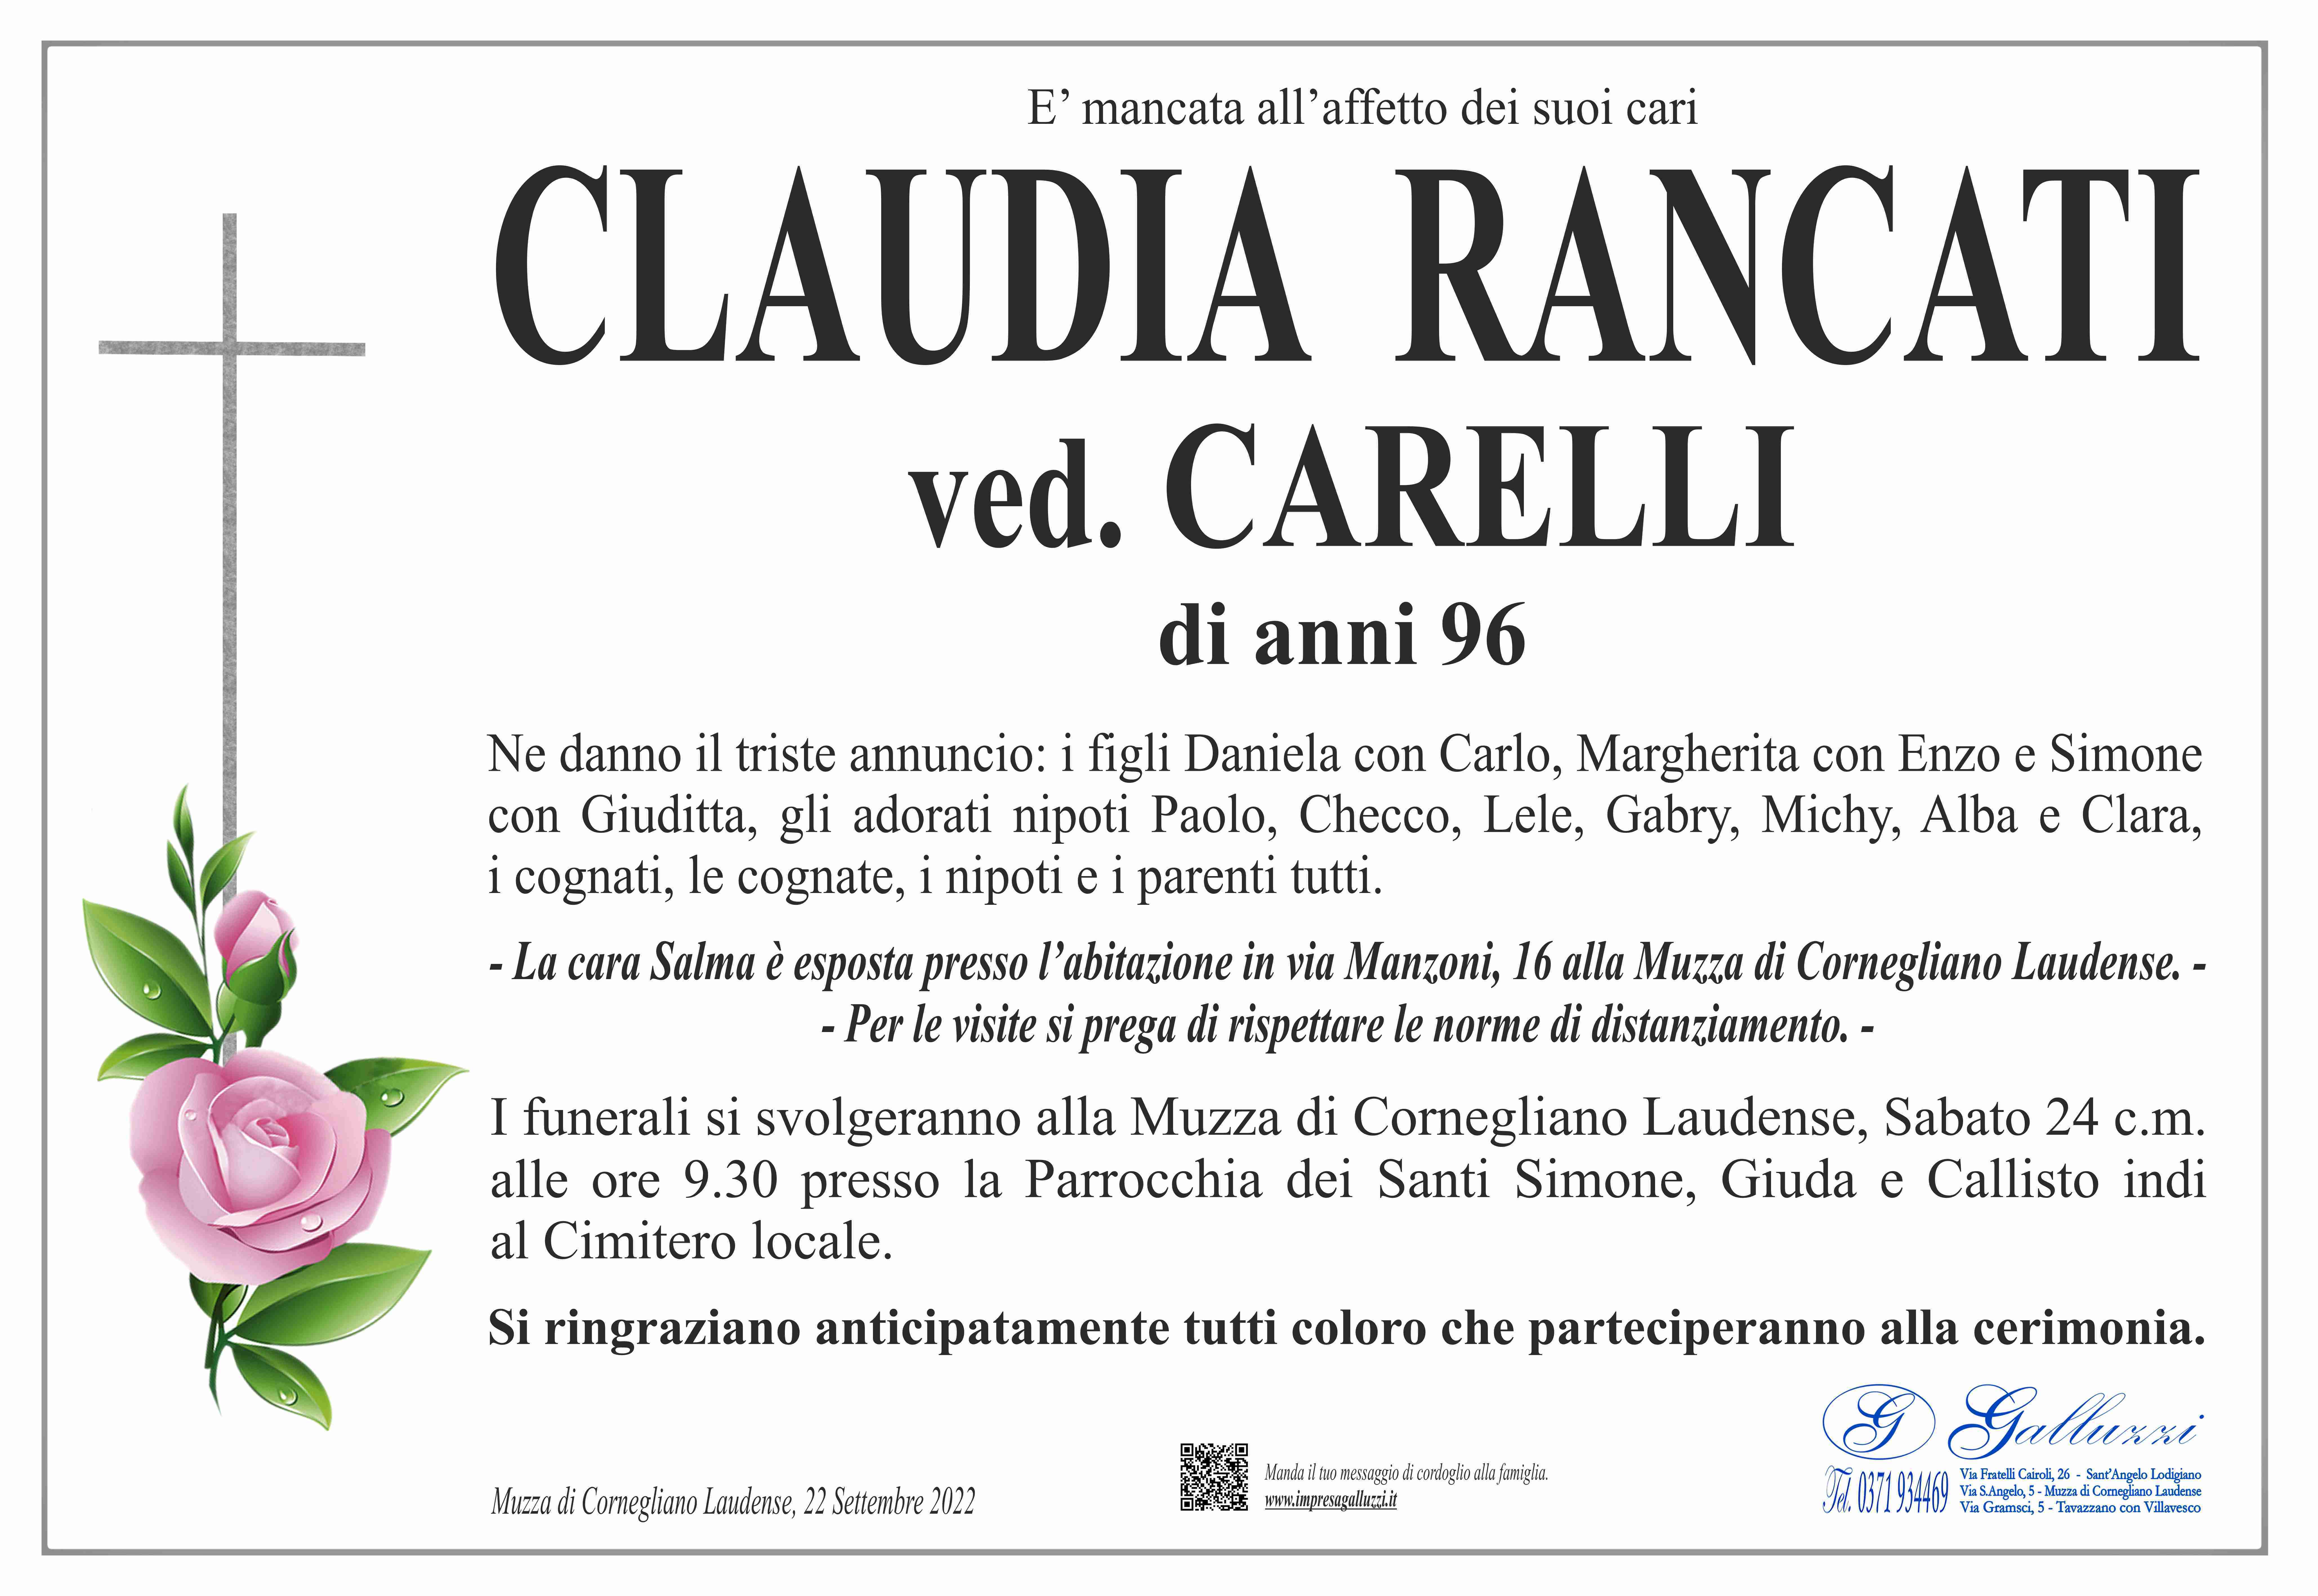 Claudia Rancati